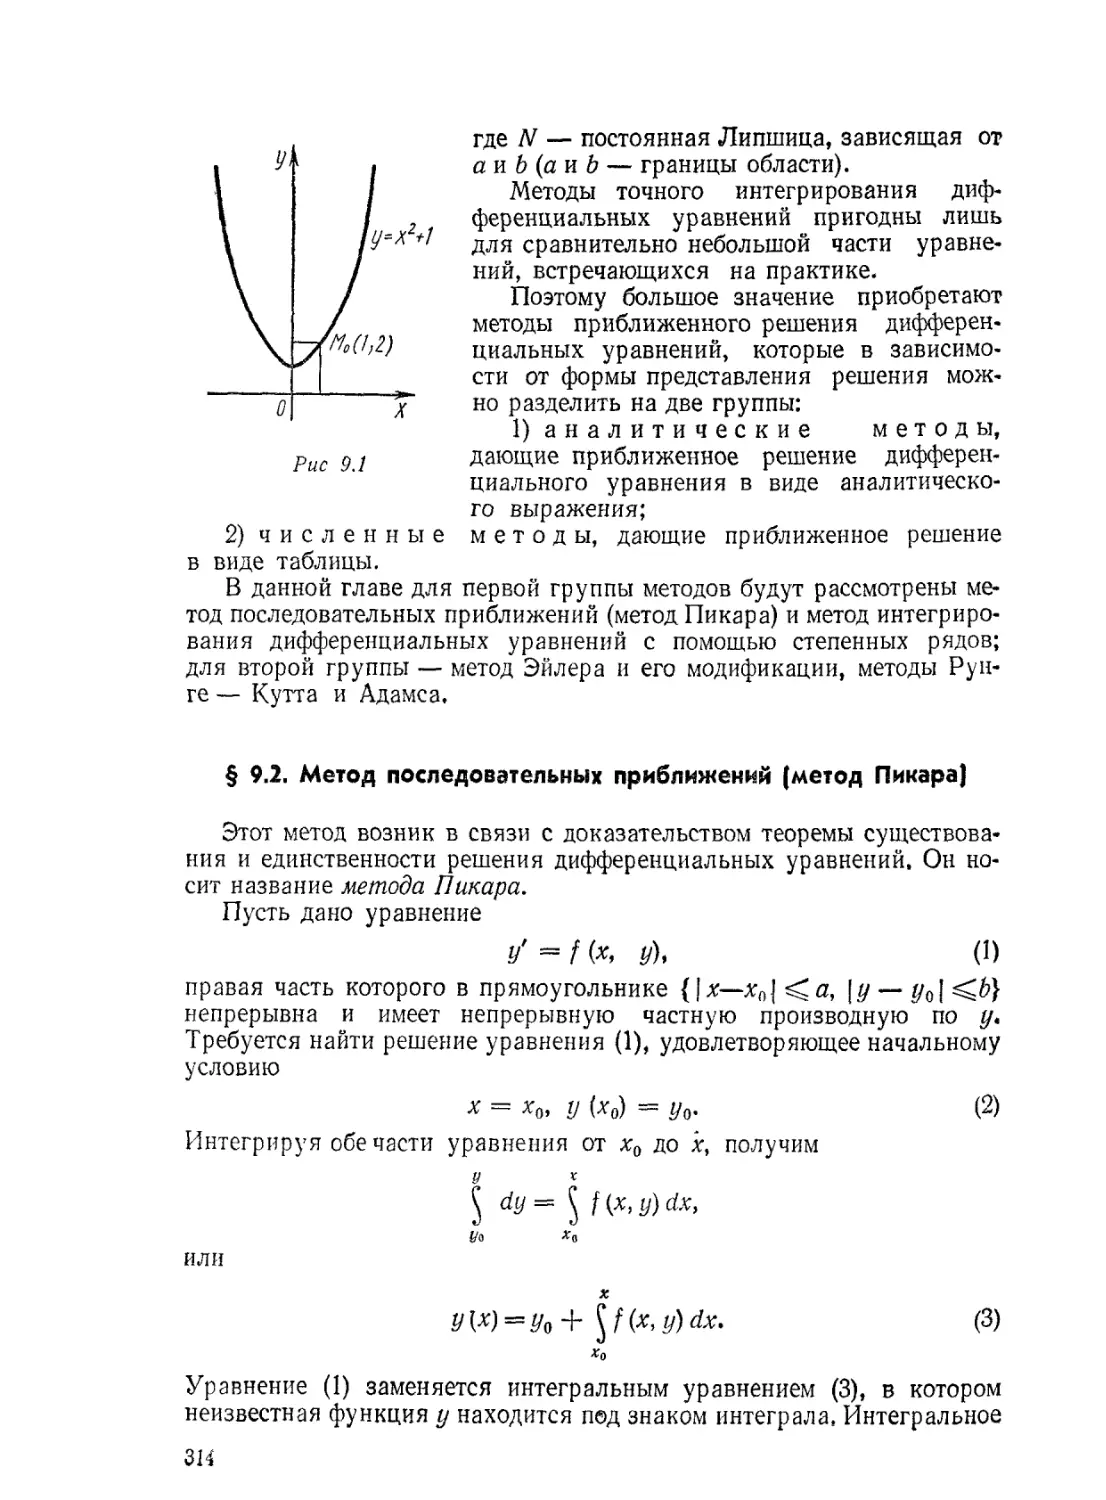 § 9.2. Метод последовательных приближений (метод Пикара)